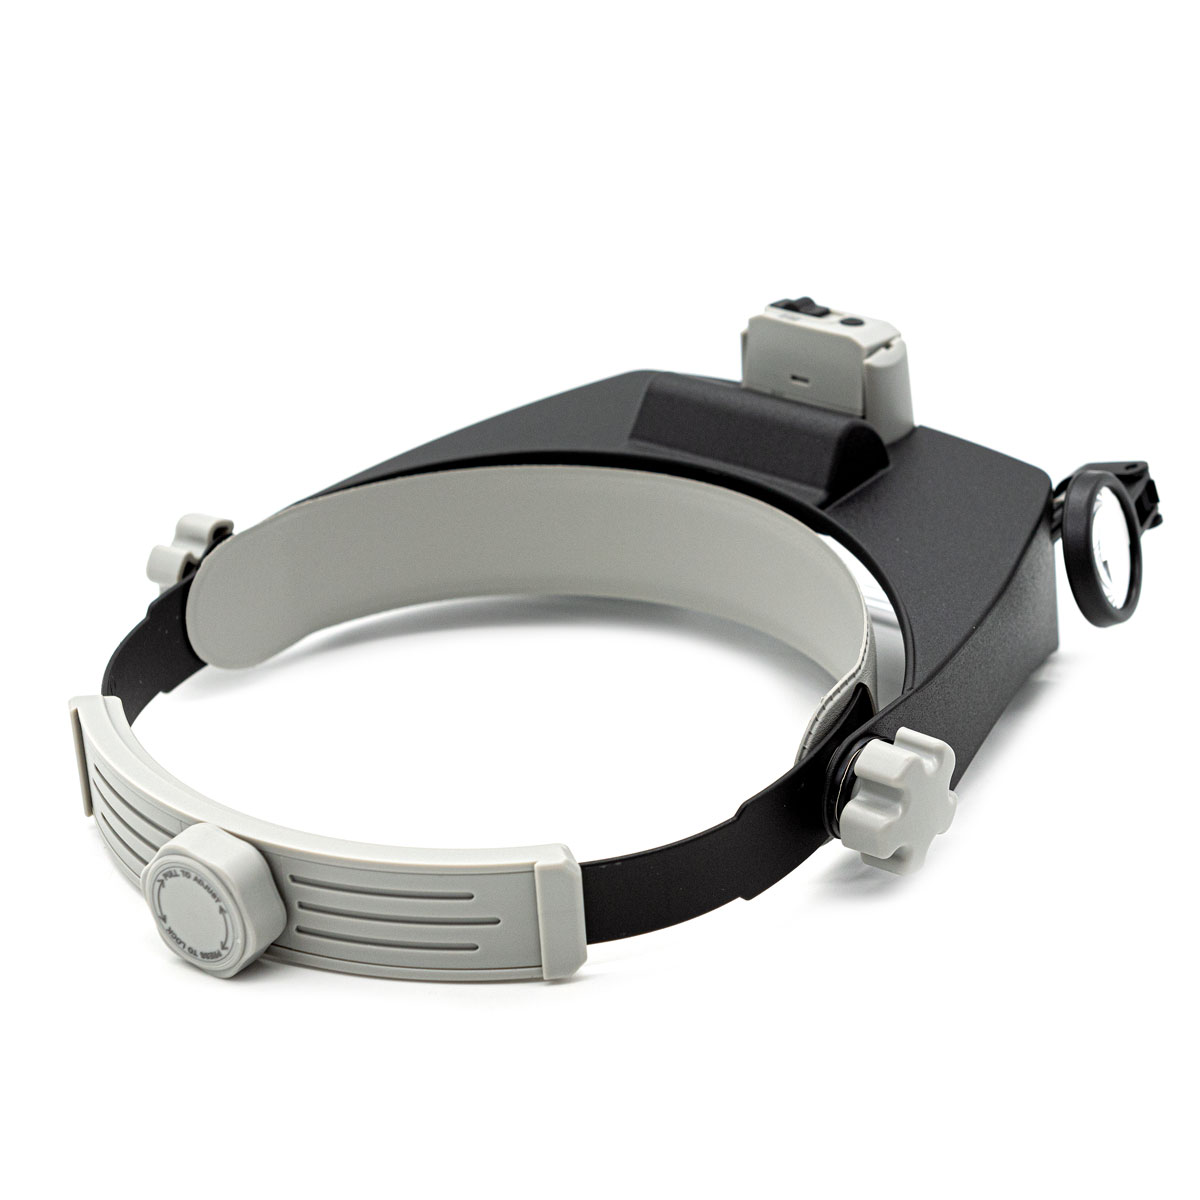 Лупа - очки Айрис увеличительная светодиодная налобная для рукоделия чтения вышивания увеличение х 1.5 - 11 - фото 2